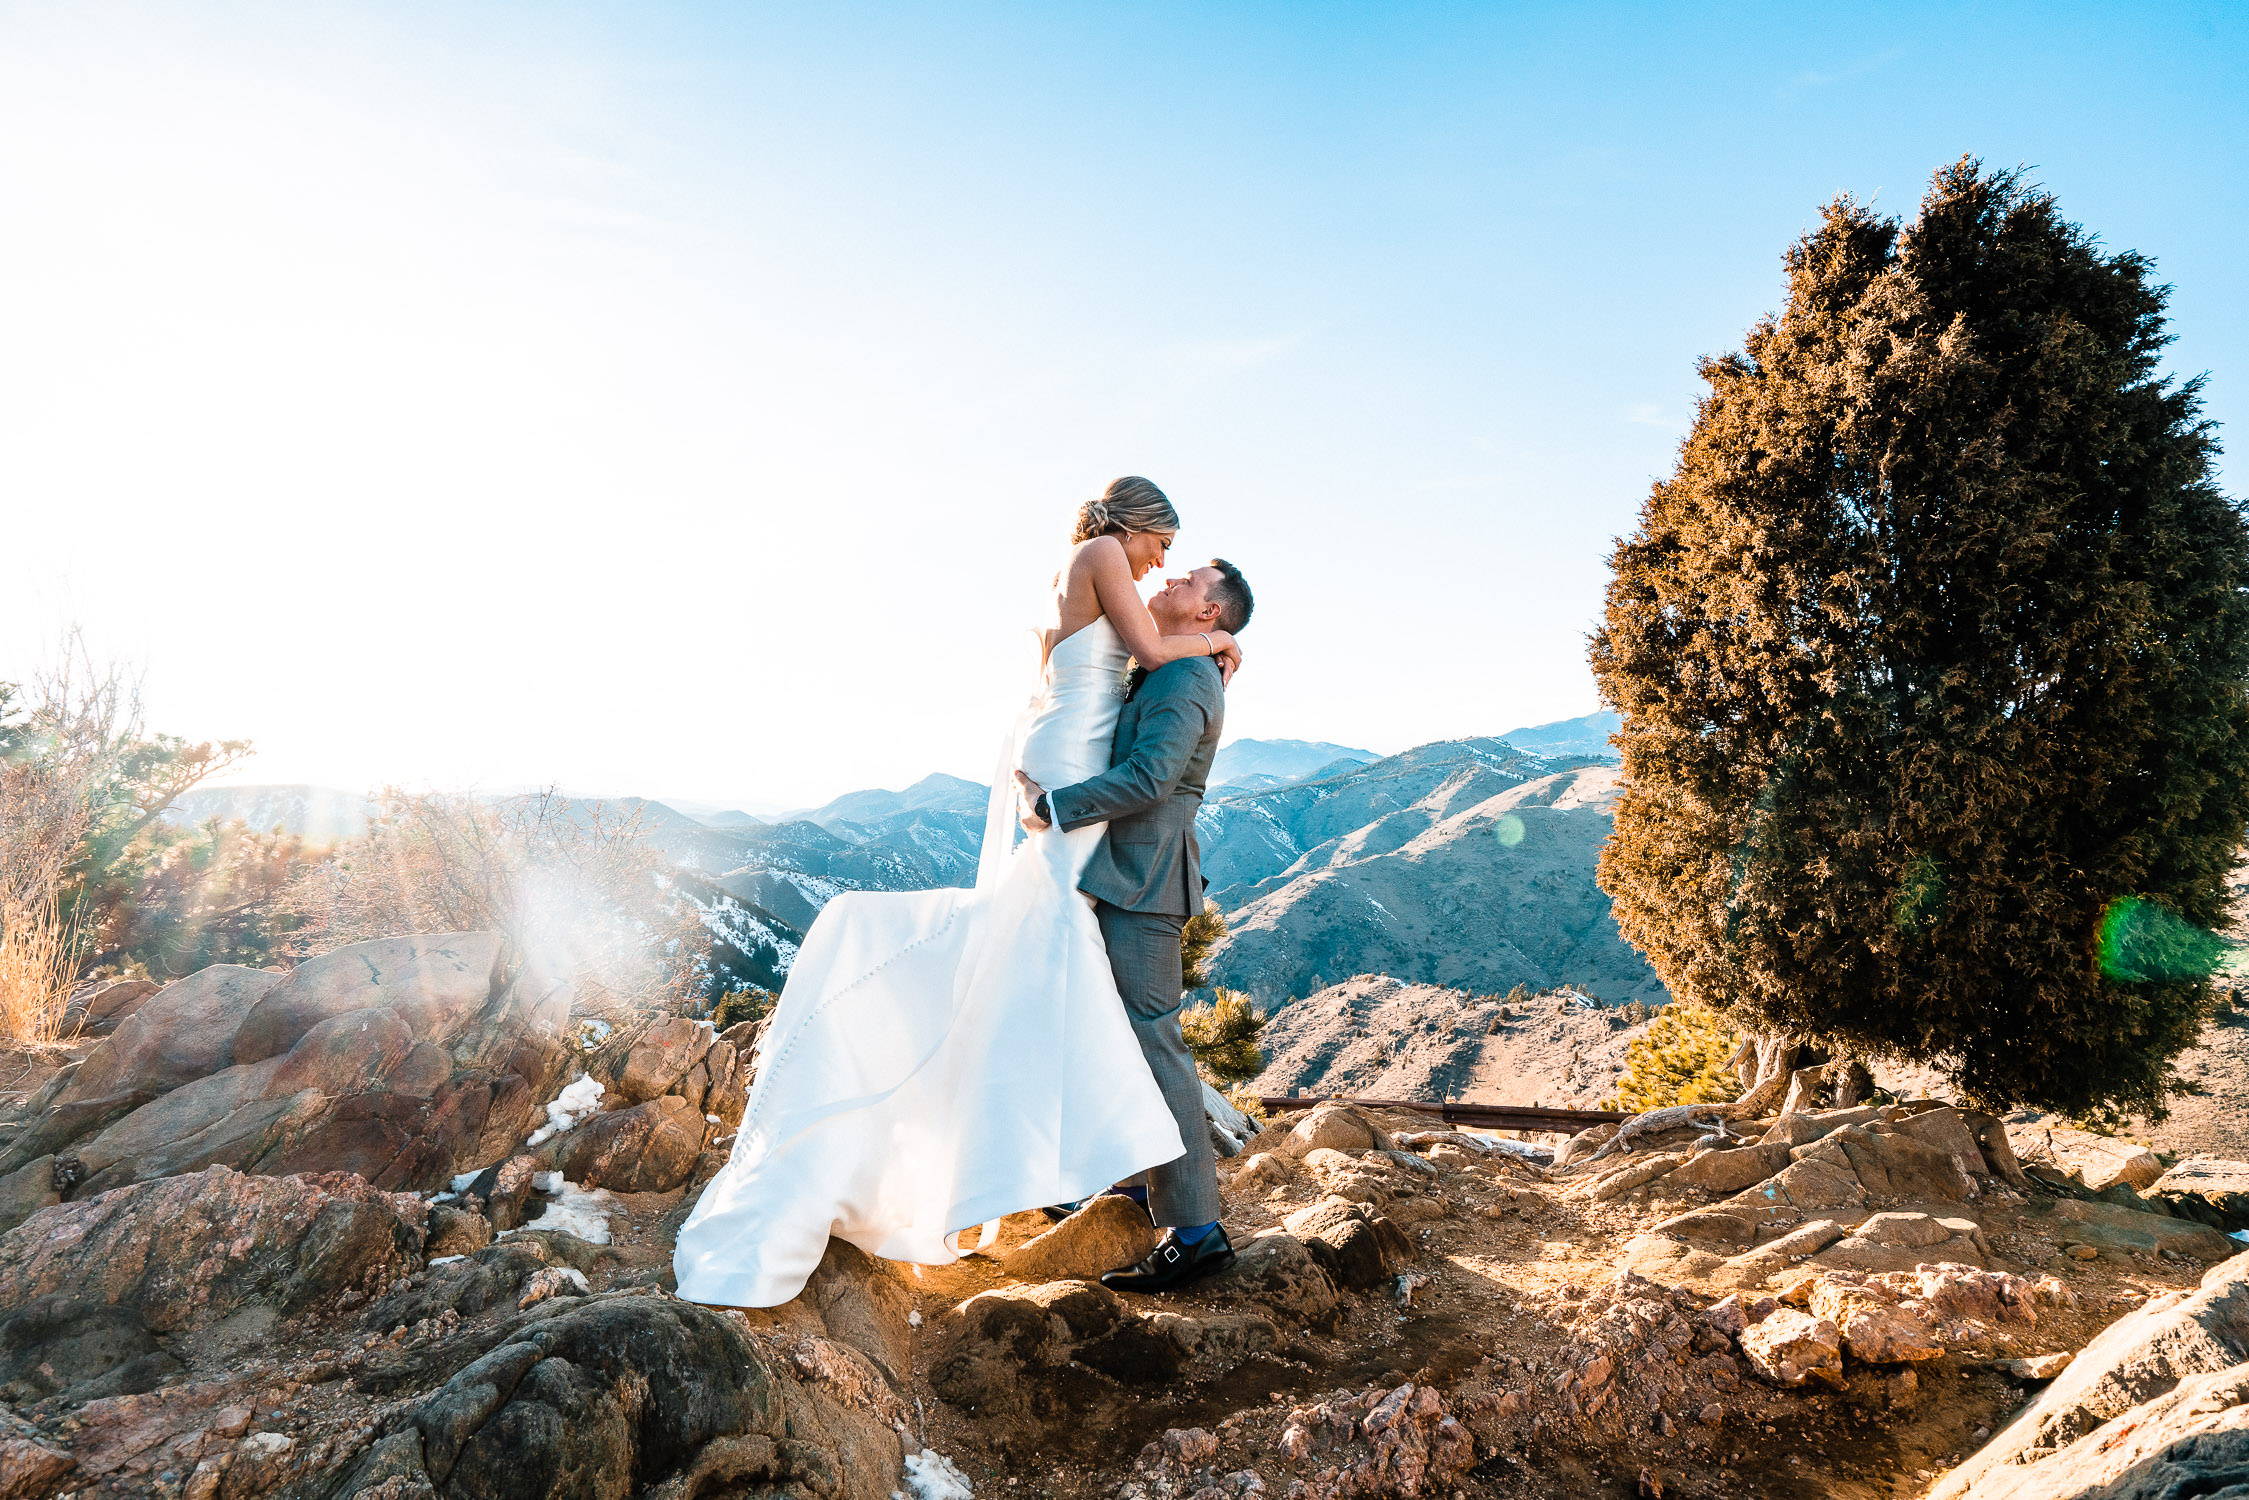 Mount Vernon Canyon Club Wedding, Colorado, Lookout mountian